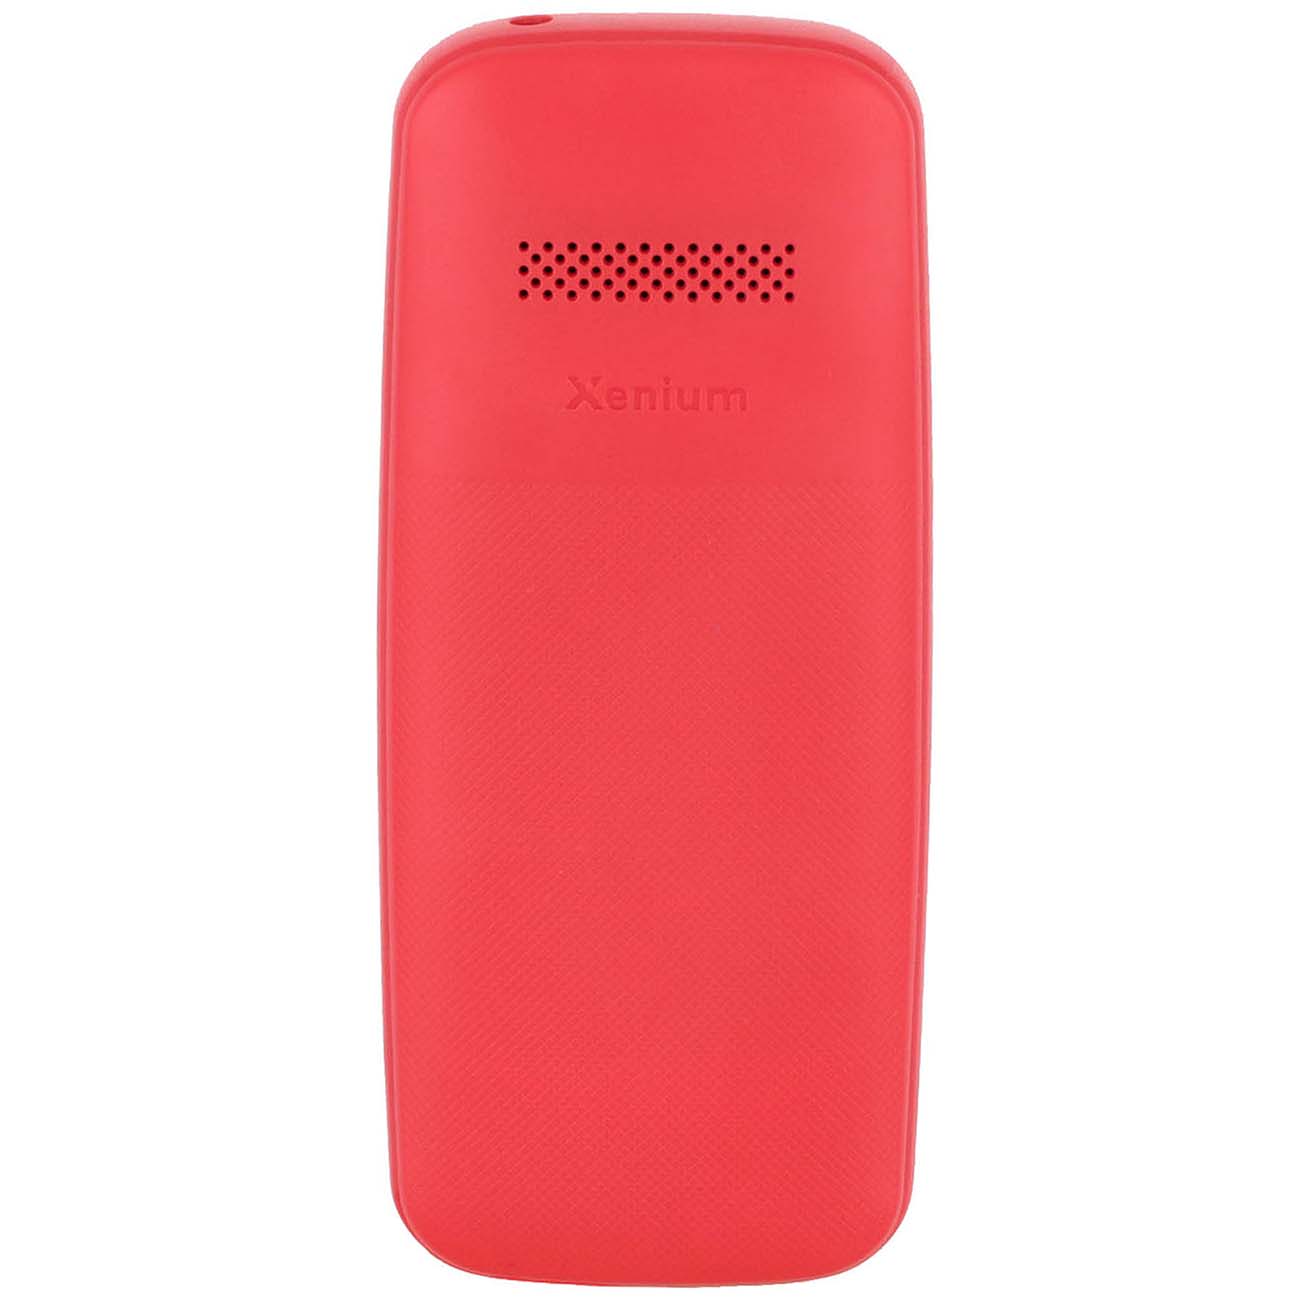 Купить Мобильный телефон Philips Xenium E109 Red в каталоге интернет  магазина М.Видео по выгодной цене с доставкой, отзывы, фотографии - Москва